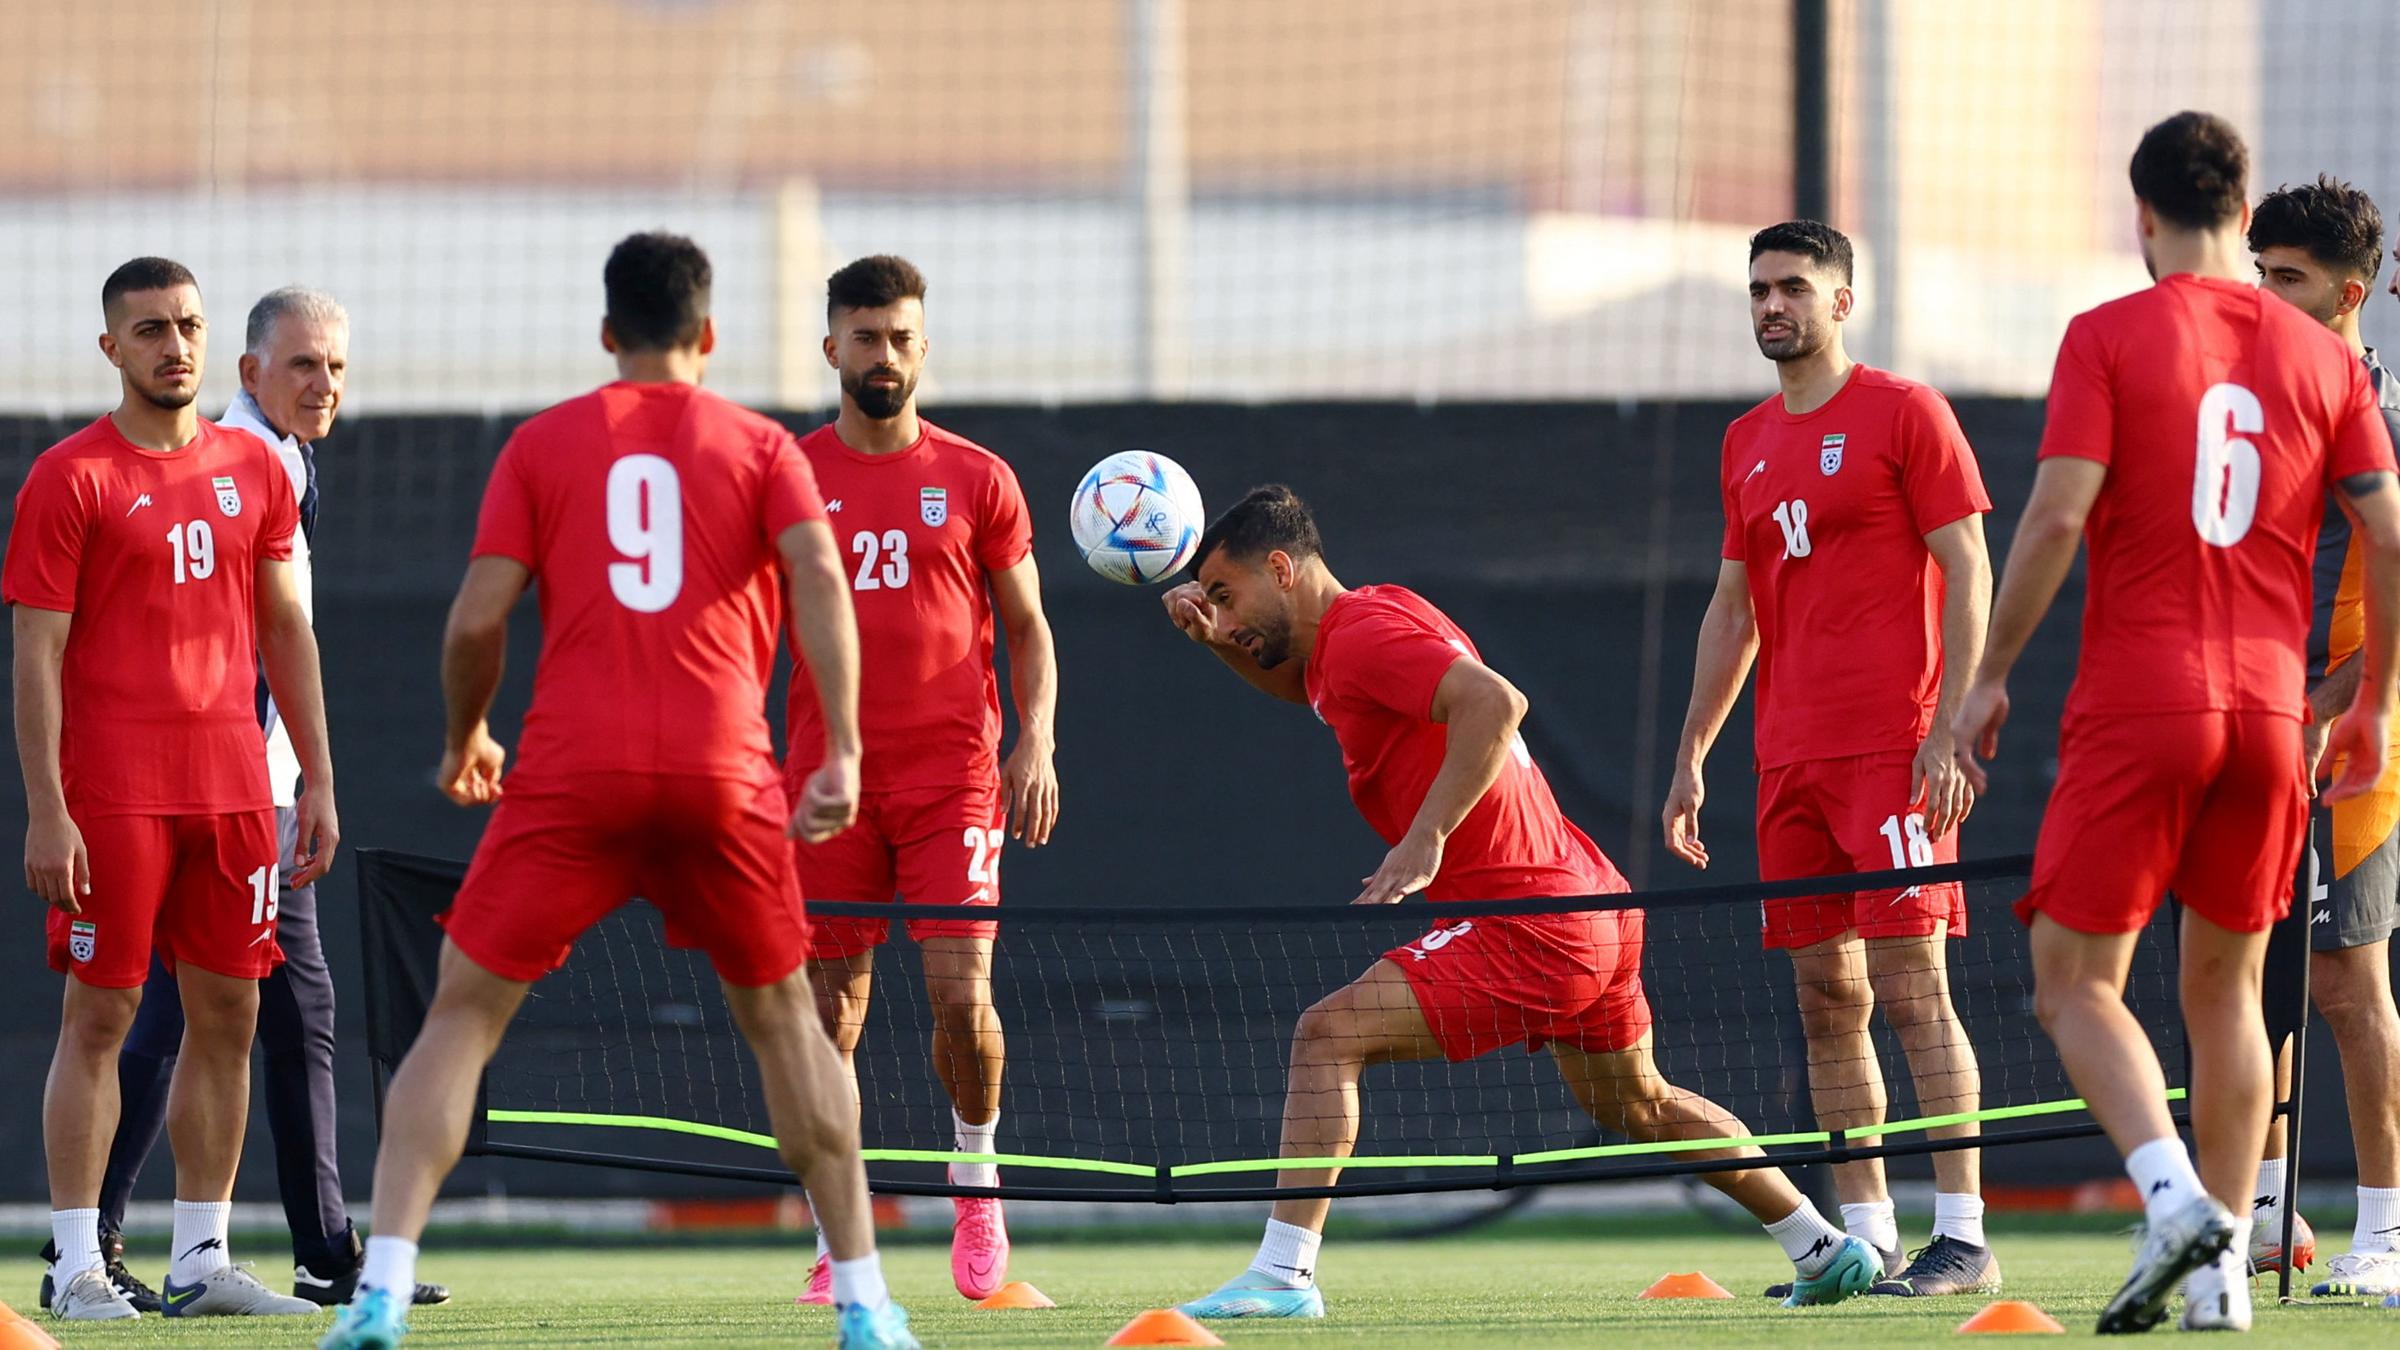 WM 2022: Die iranische Mannschaft beim Training. In der Mitte Ehsan Hajisafi.